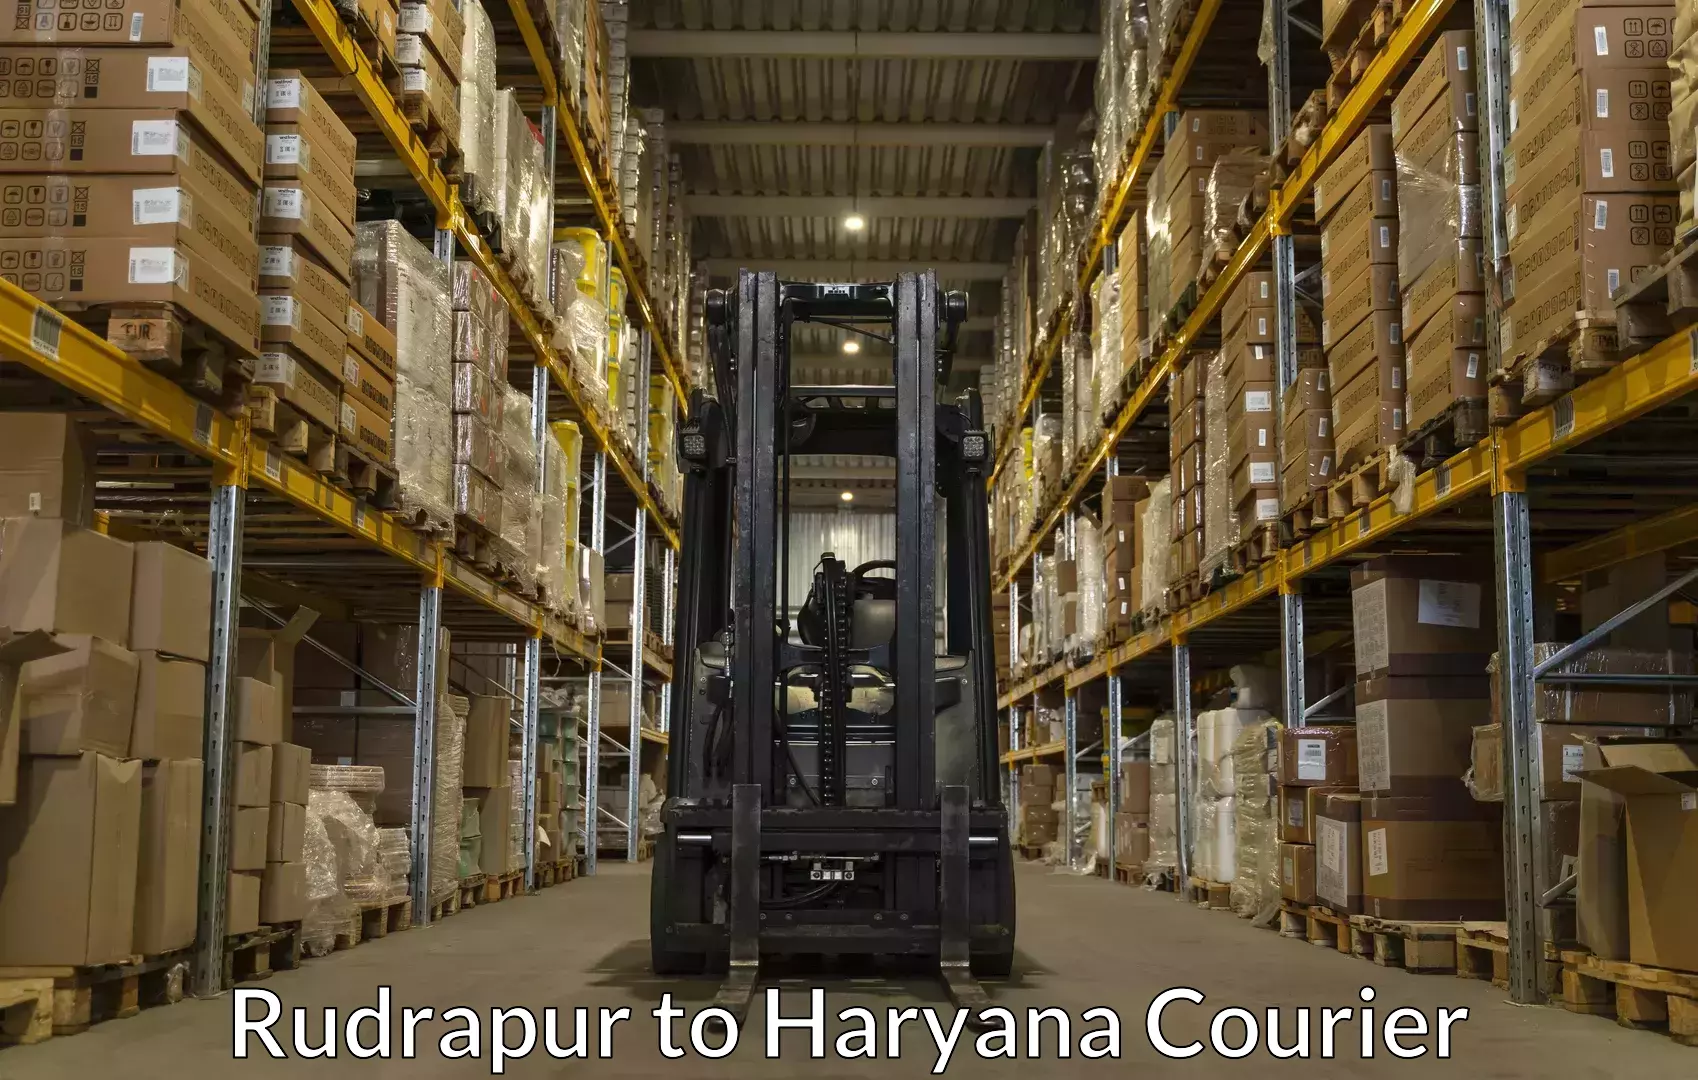 Baggage shipping service Rudrapur to Faridabad